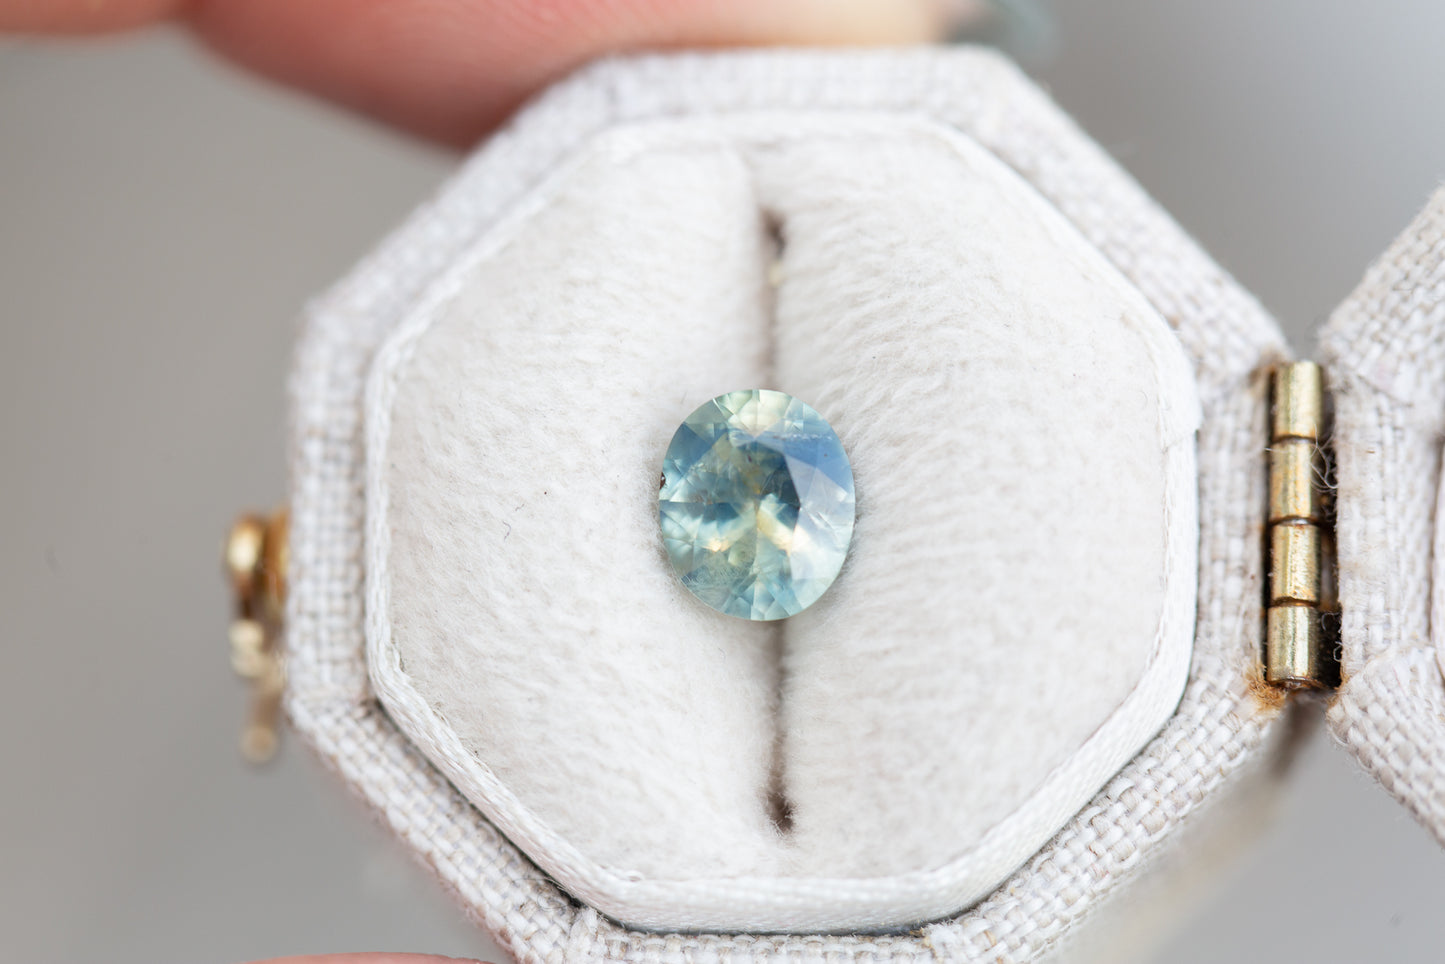 1.33ct oval murky opalescent light blue/teal sapphire